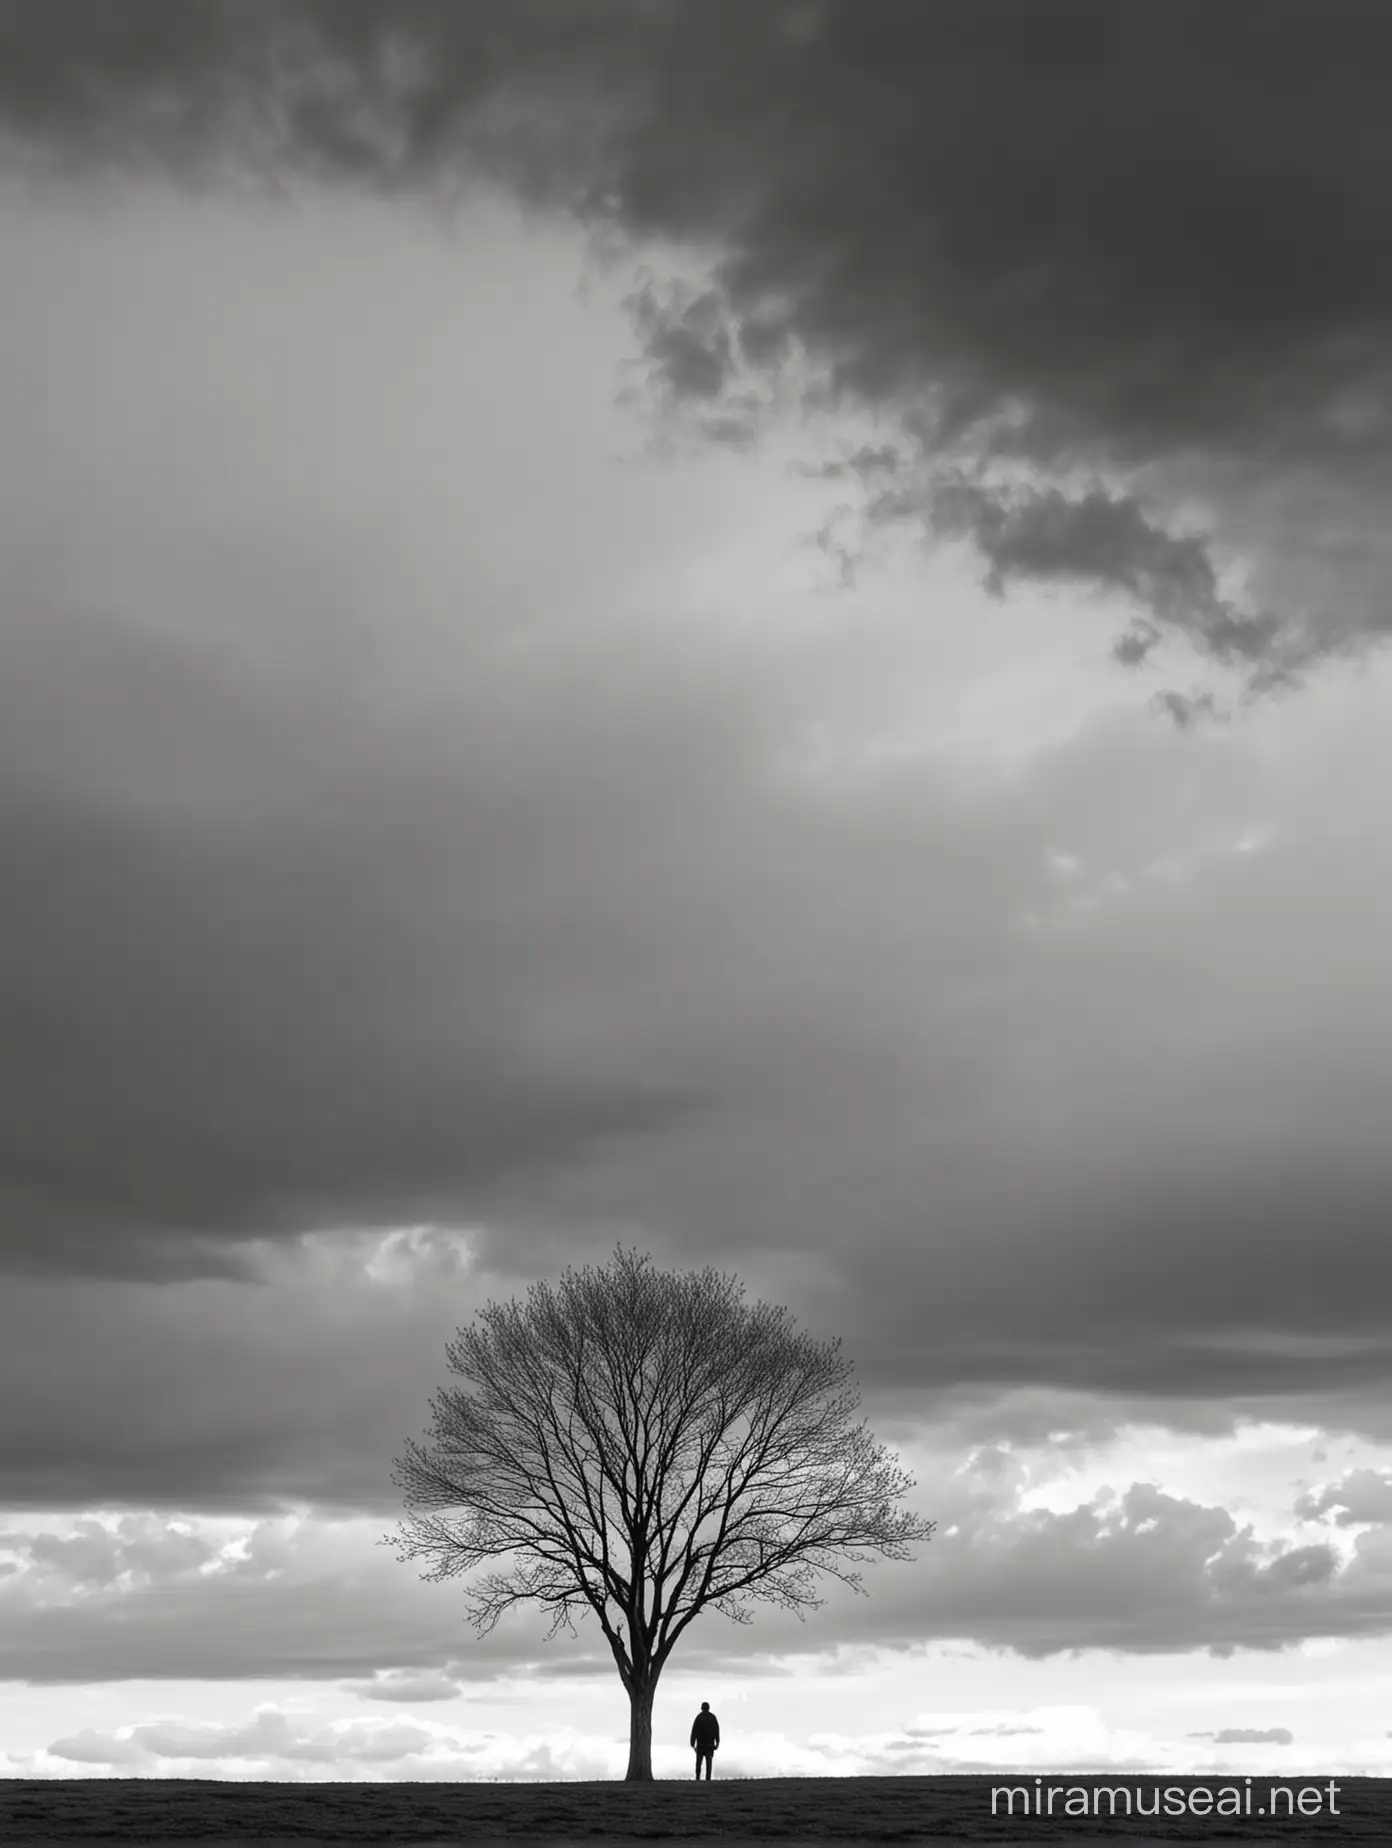 سیاه و سفید.مینیمال درخت از فاصله خیلی دور .ابر در آسمان.مرد کنار درخت